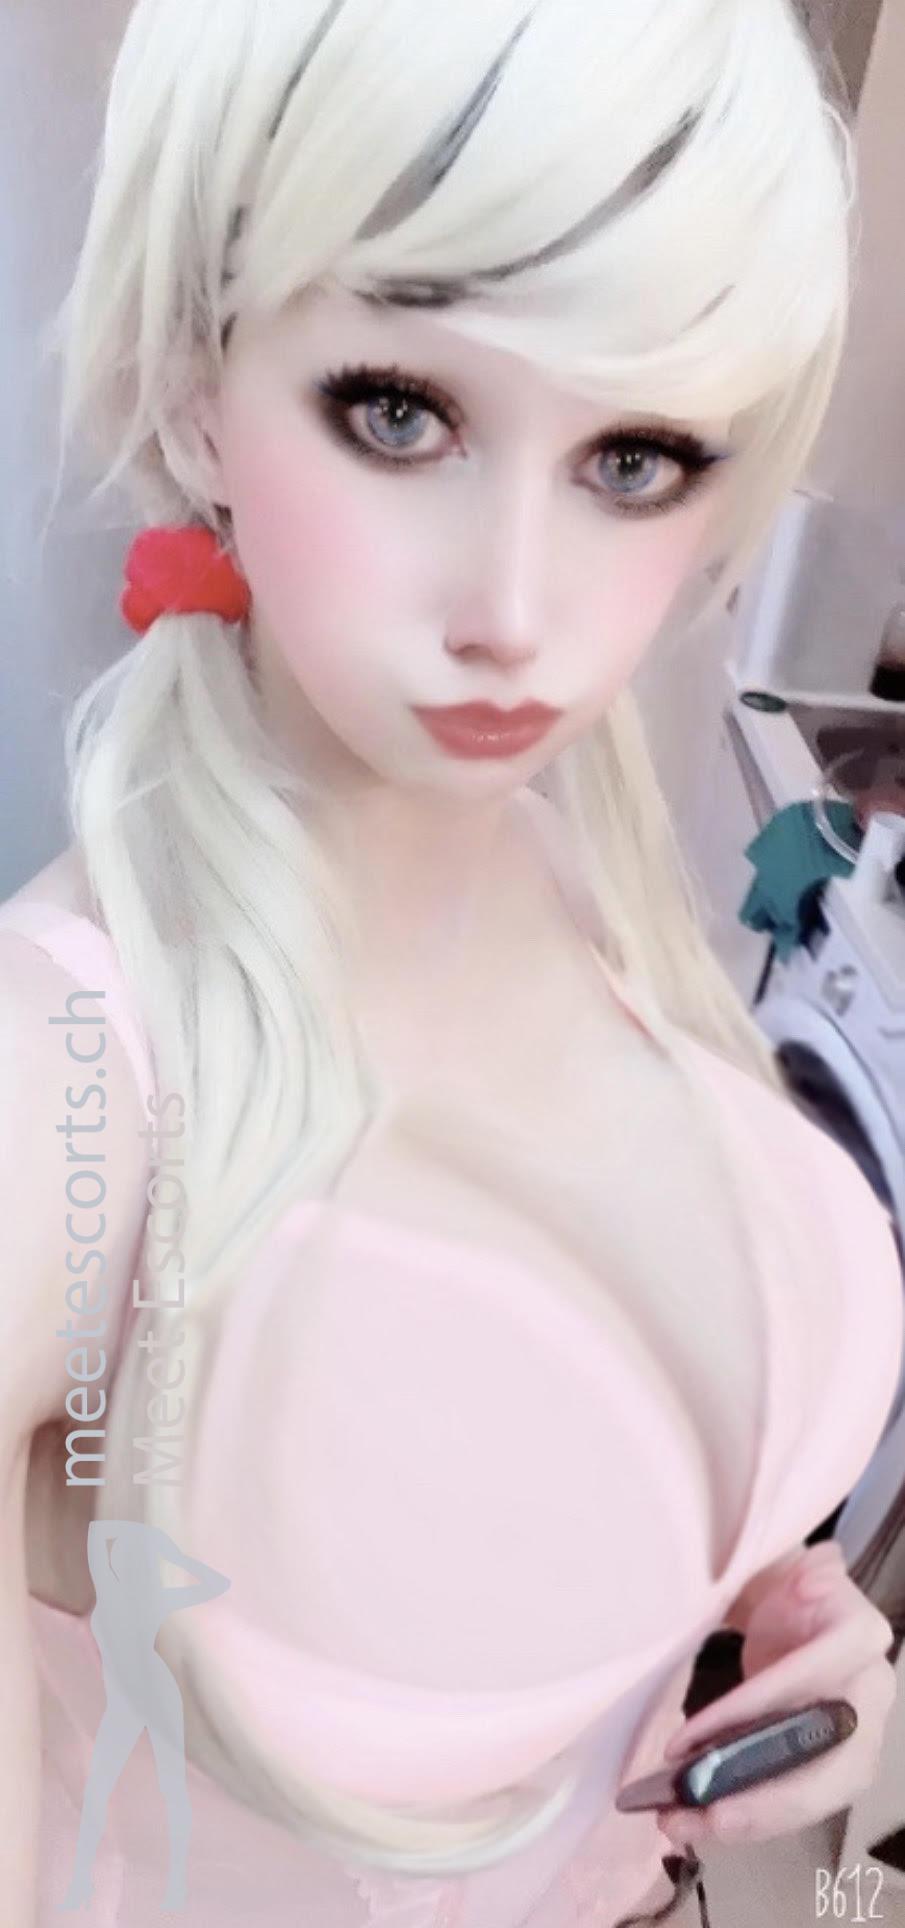 Blondie_Anal_Queen